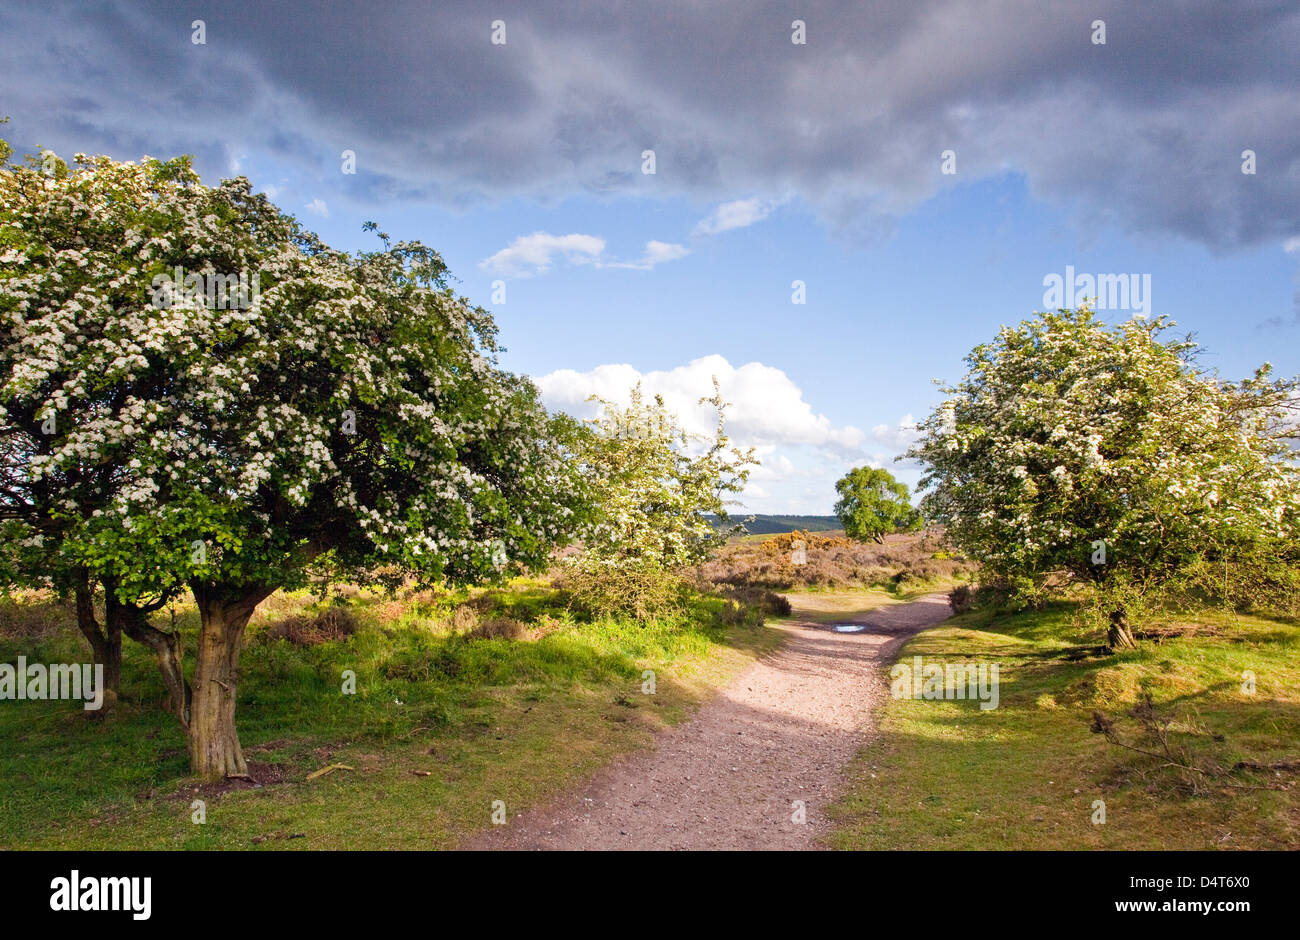 Corazón de Inglaterra camino sendero pueda florecer en el Hawthorn árboles Cannock Chase Country Park AONB (zona de excepcional belleza natural) Foto de stock